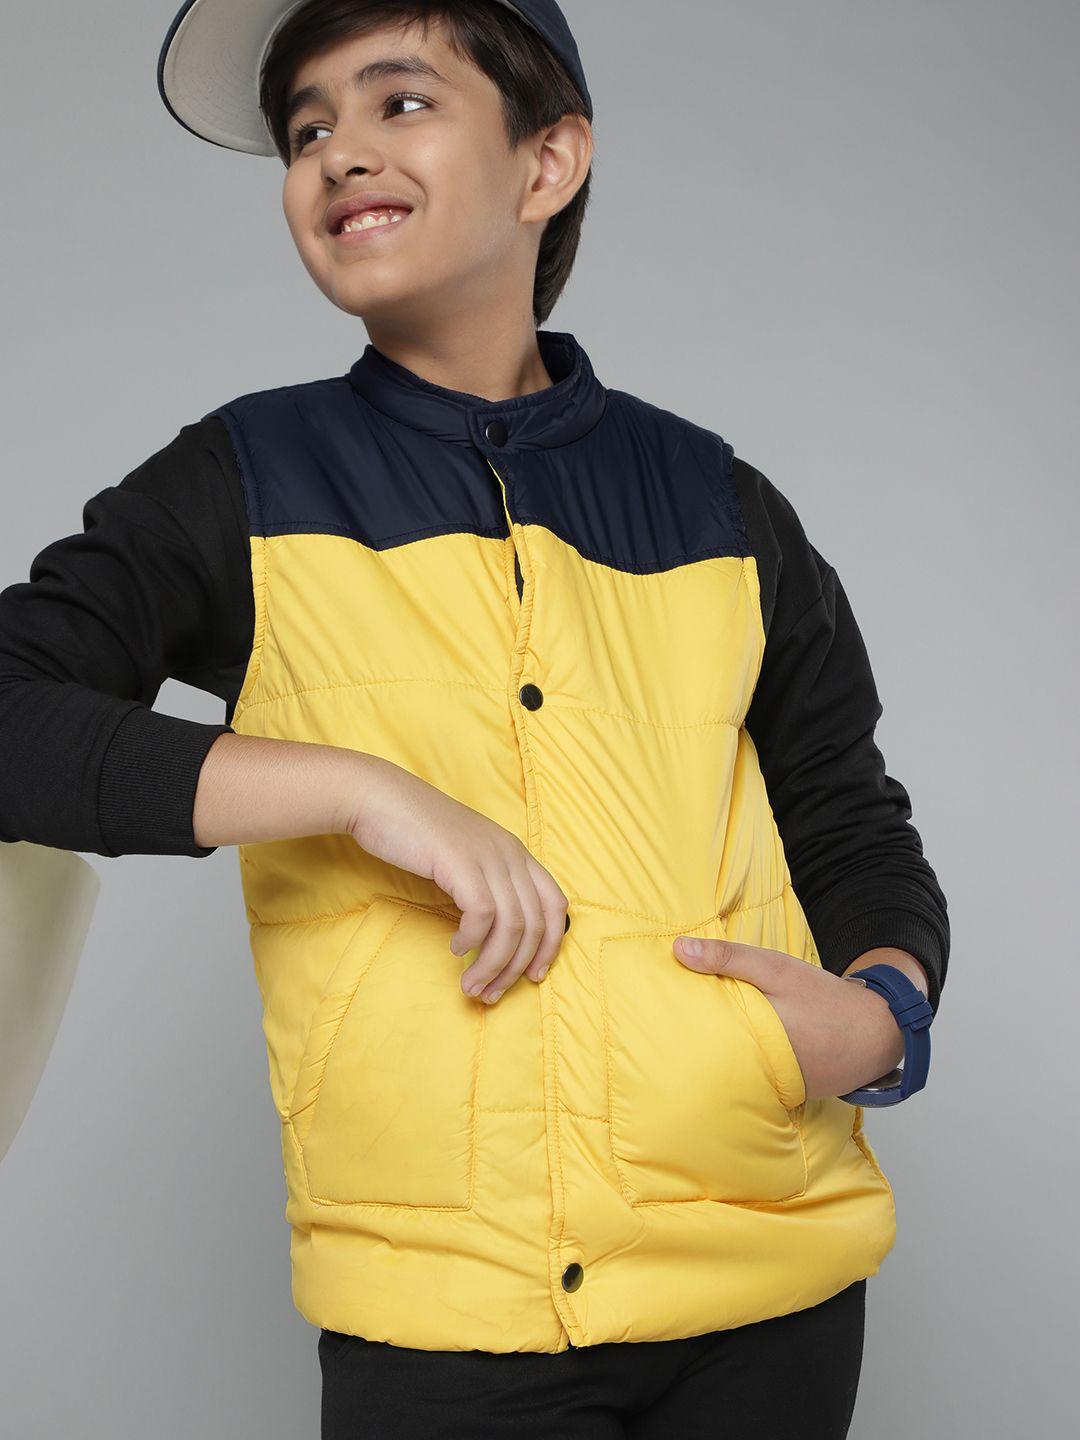 yk boys yellow & navy colourblocked padded jacket